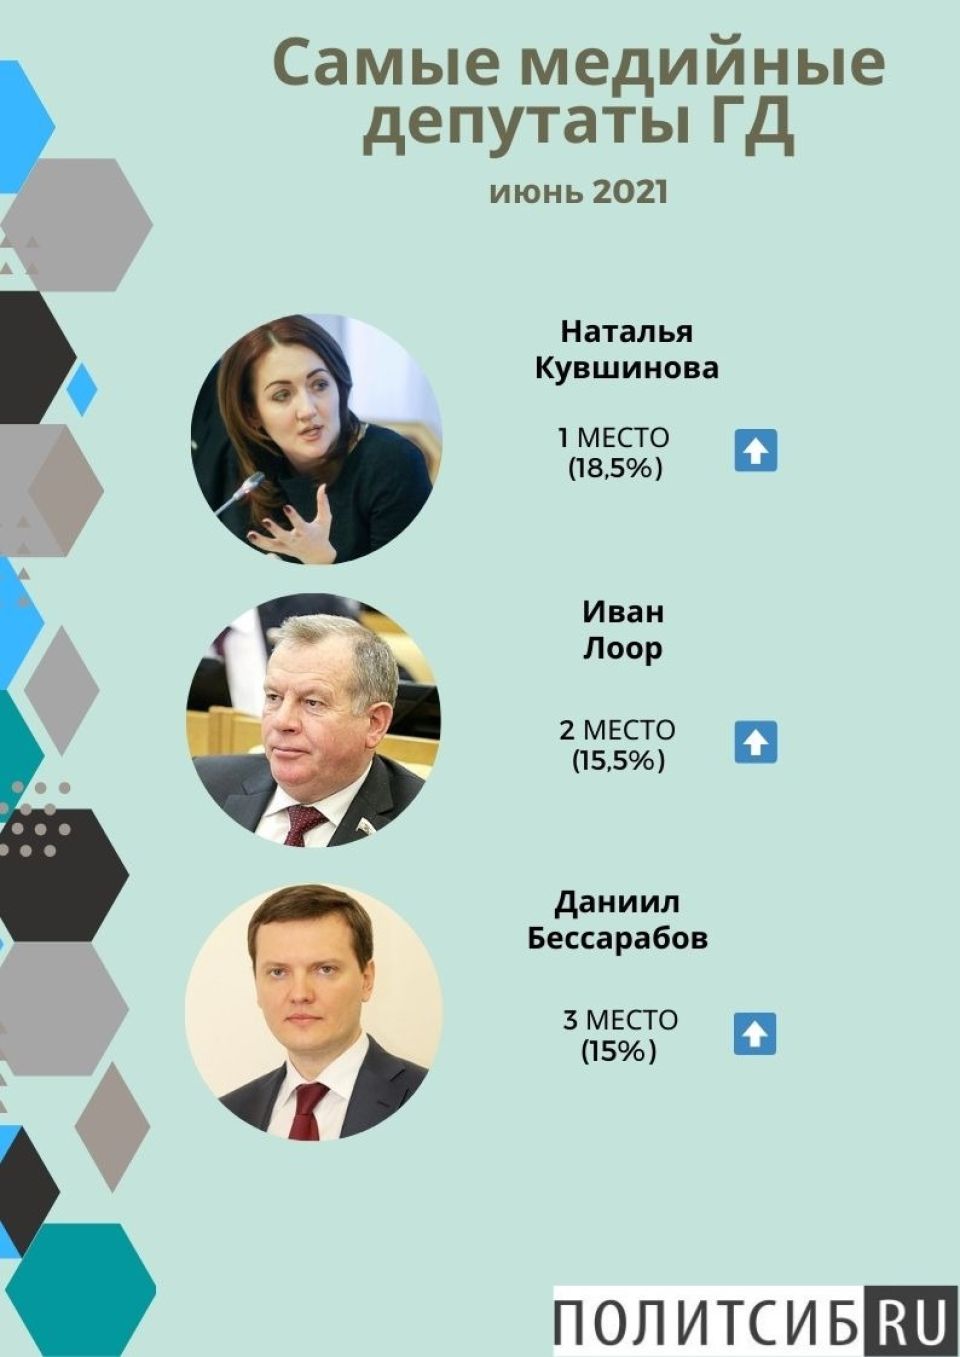 Рейтинг депутатов Госдумы в июне 2021 года